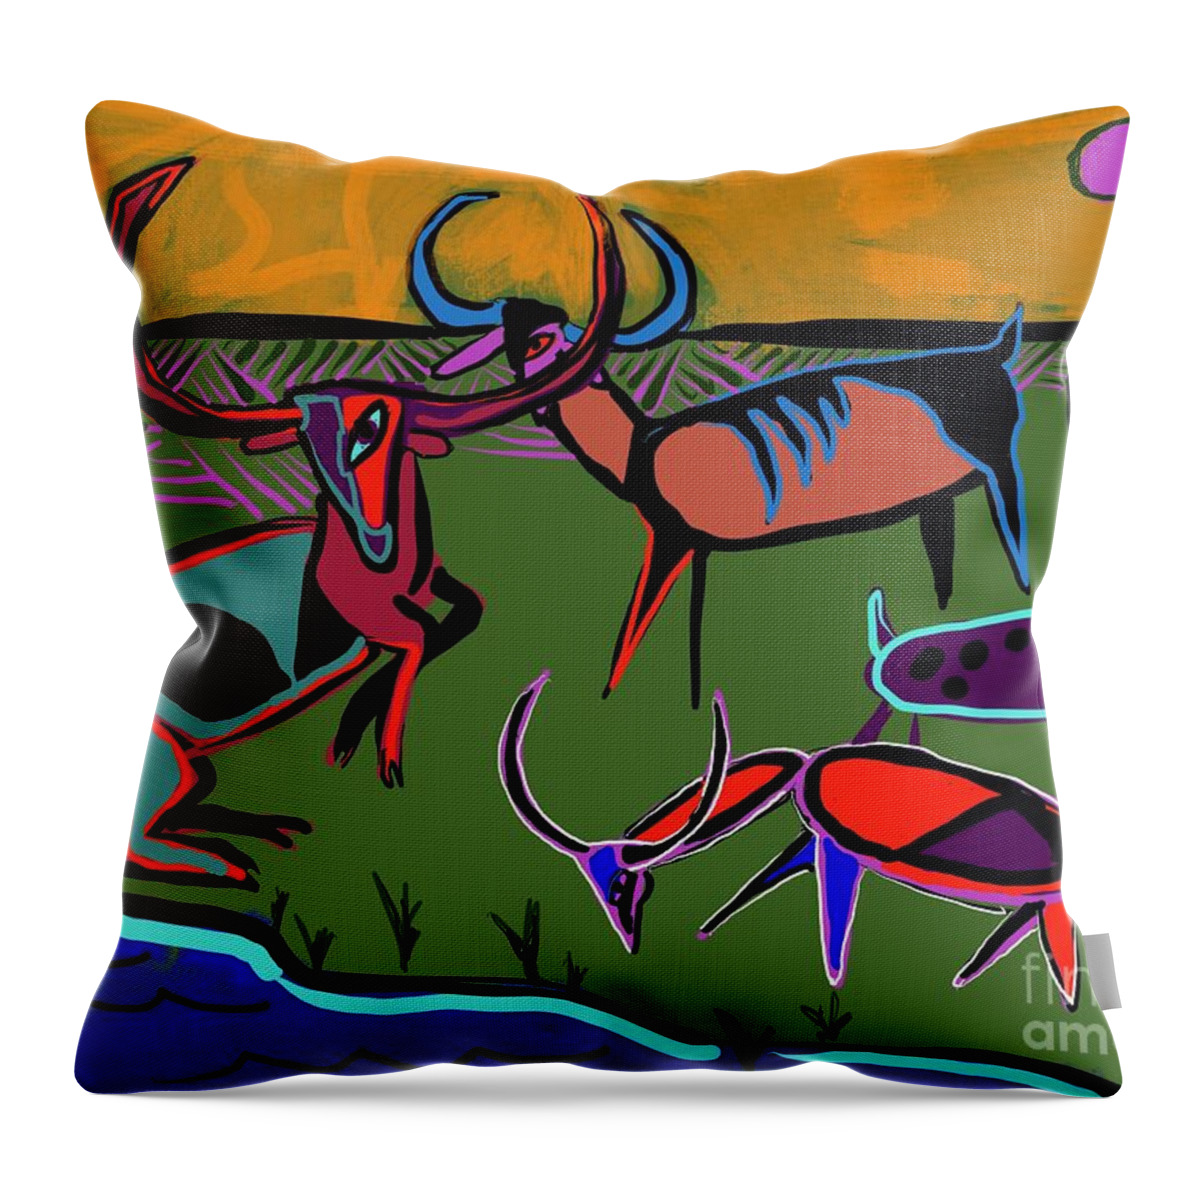  Throw Pillow featuring the digital art Gathering Herd by Hans Magden